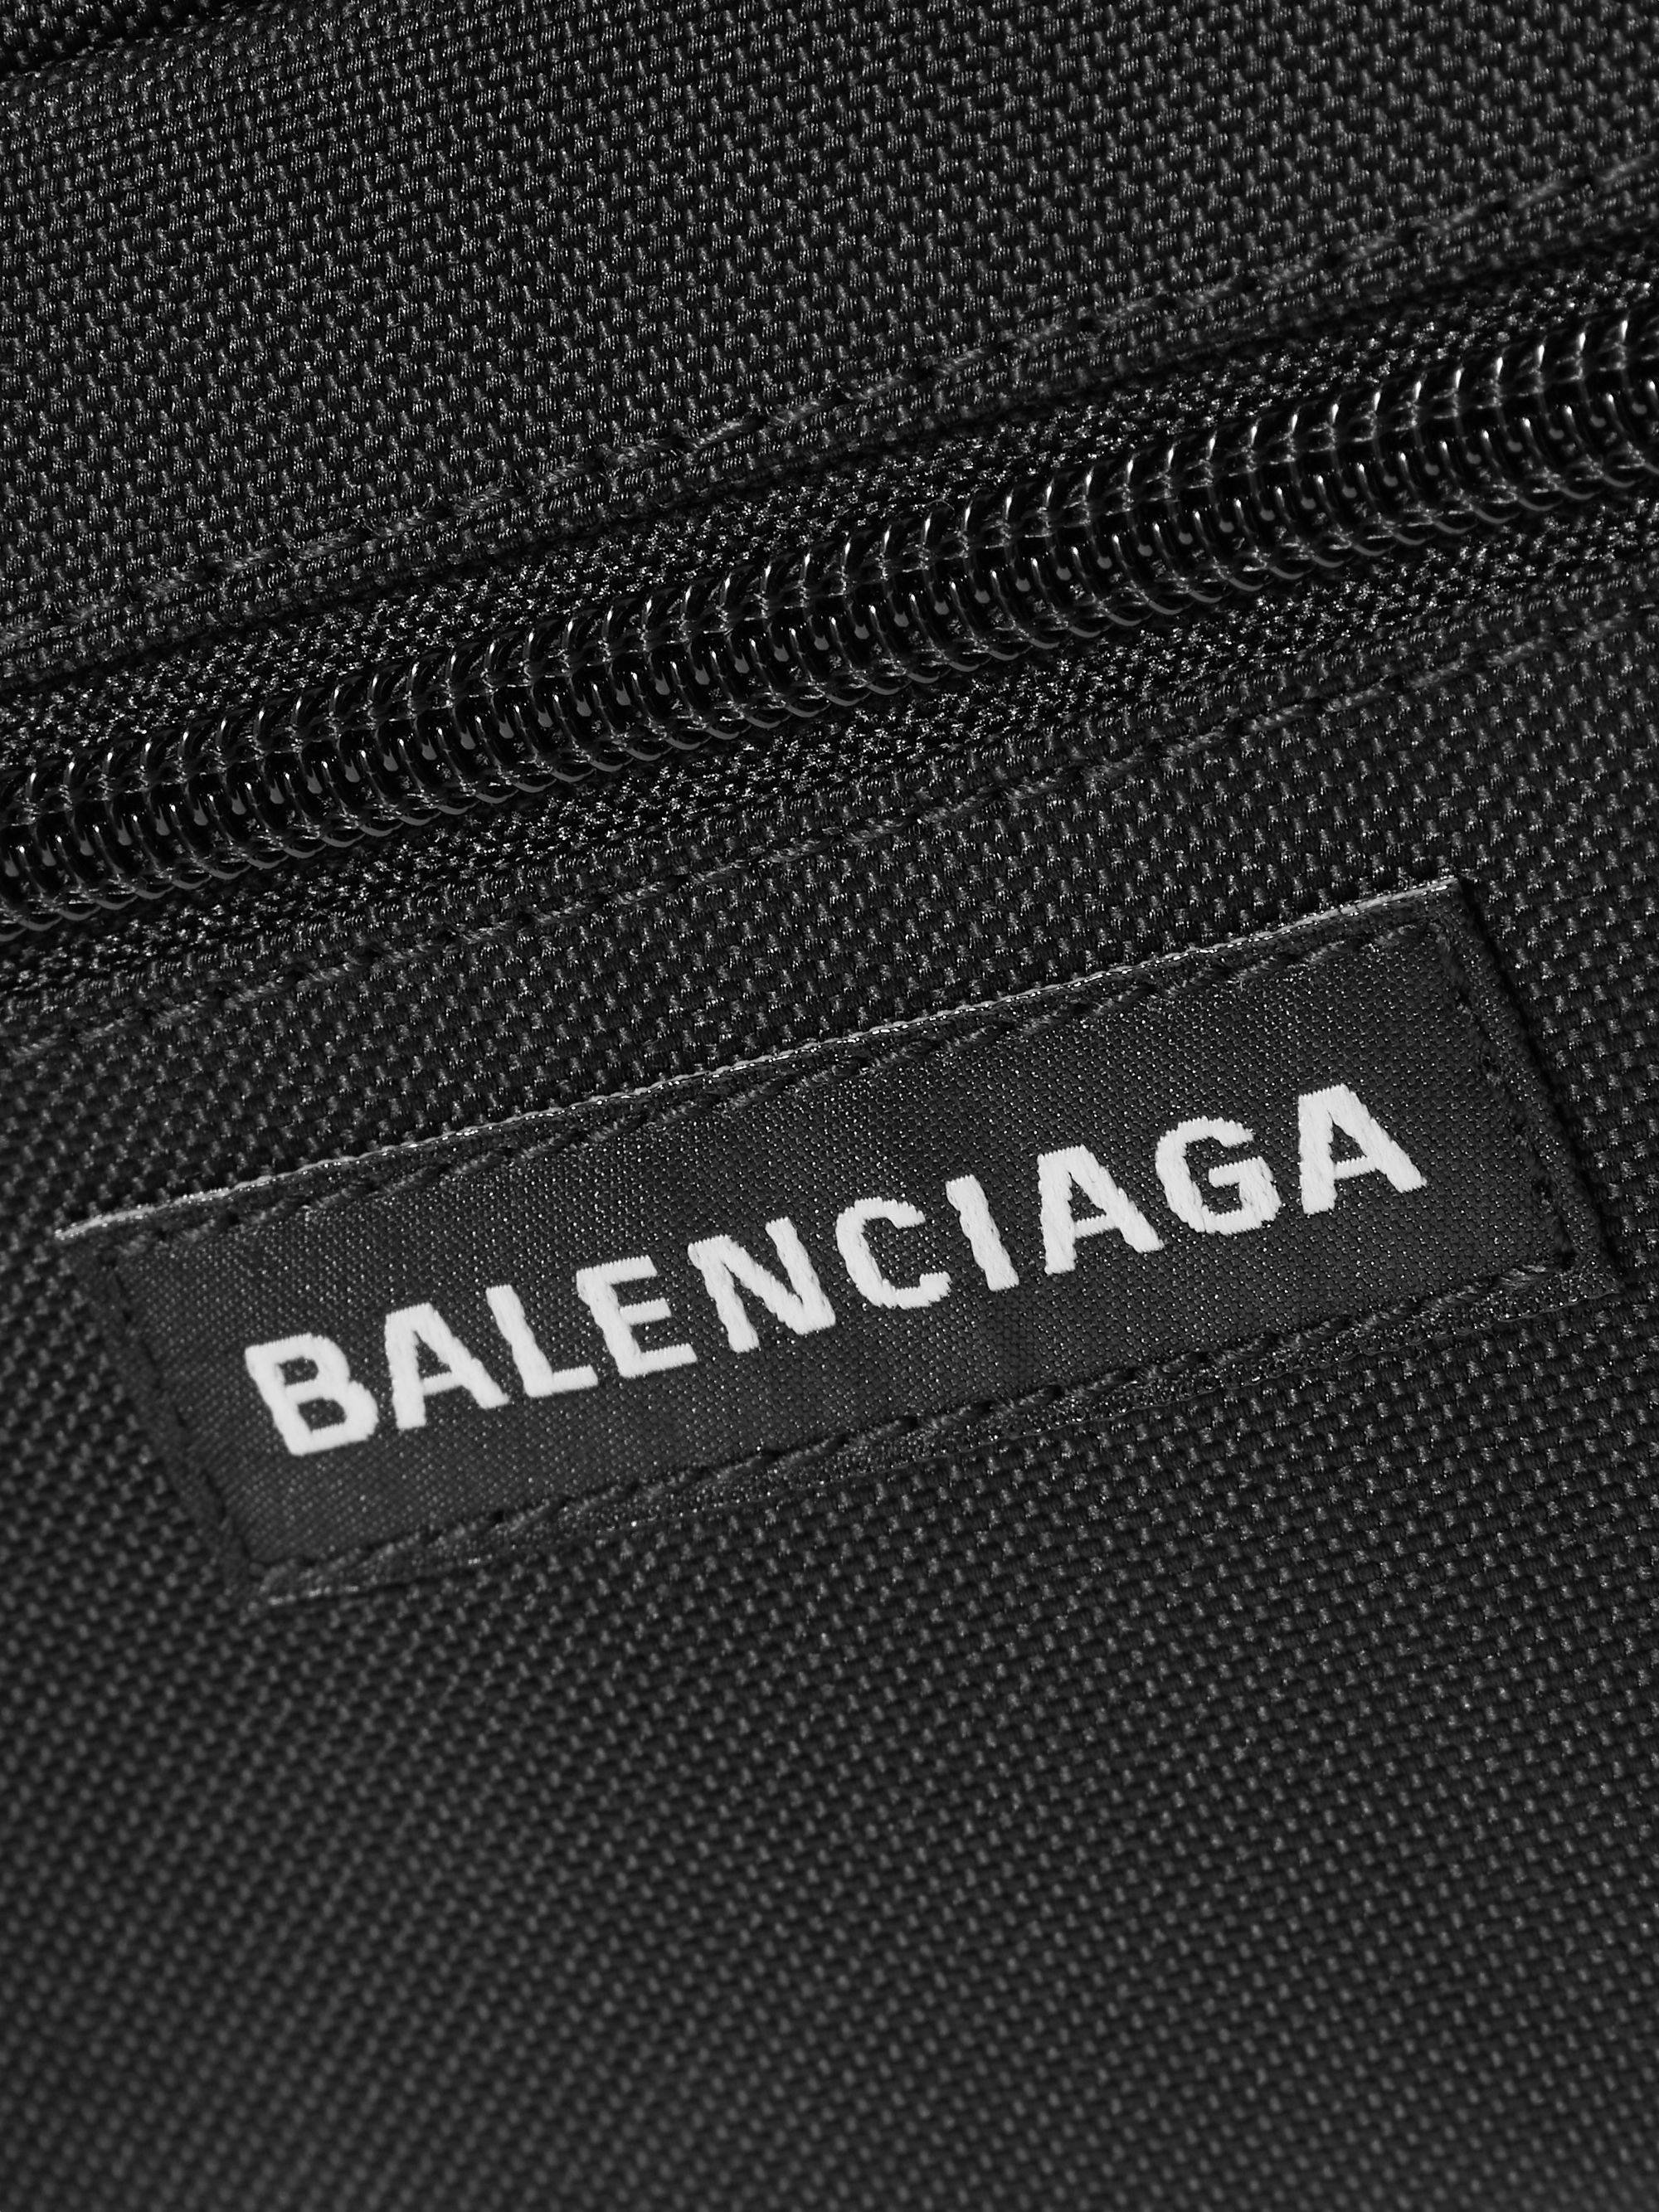 Download Balenciaga Bag Logo Wallpaper Wallpapers Com